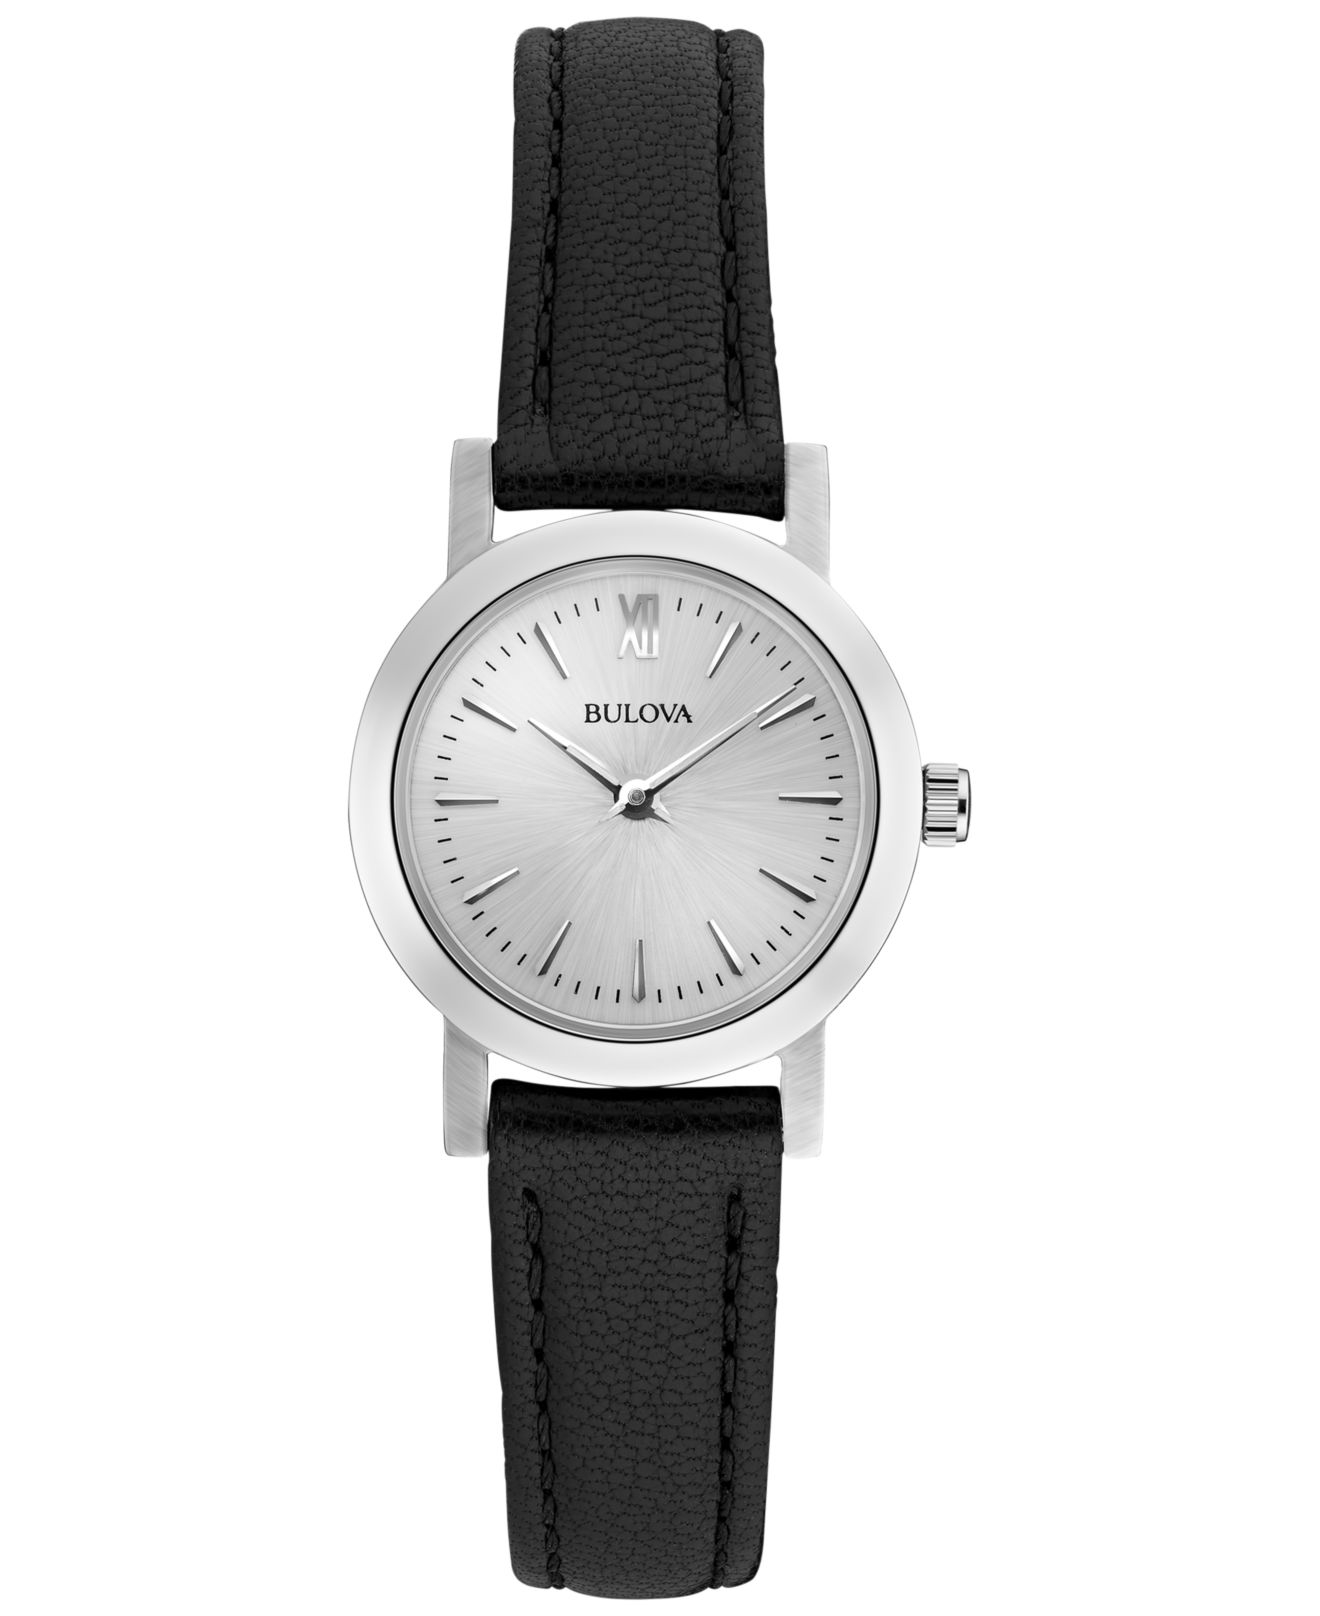 Lyst - Bulova Women's Interchangeable Leather Strap Watch Set 24mm ...